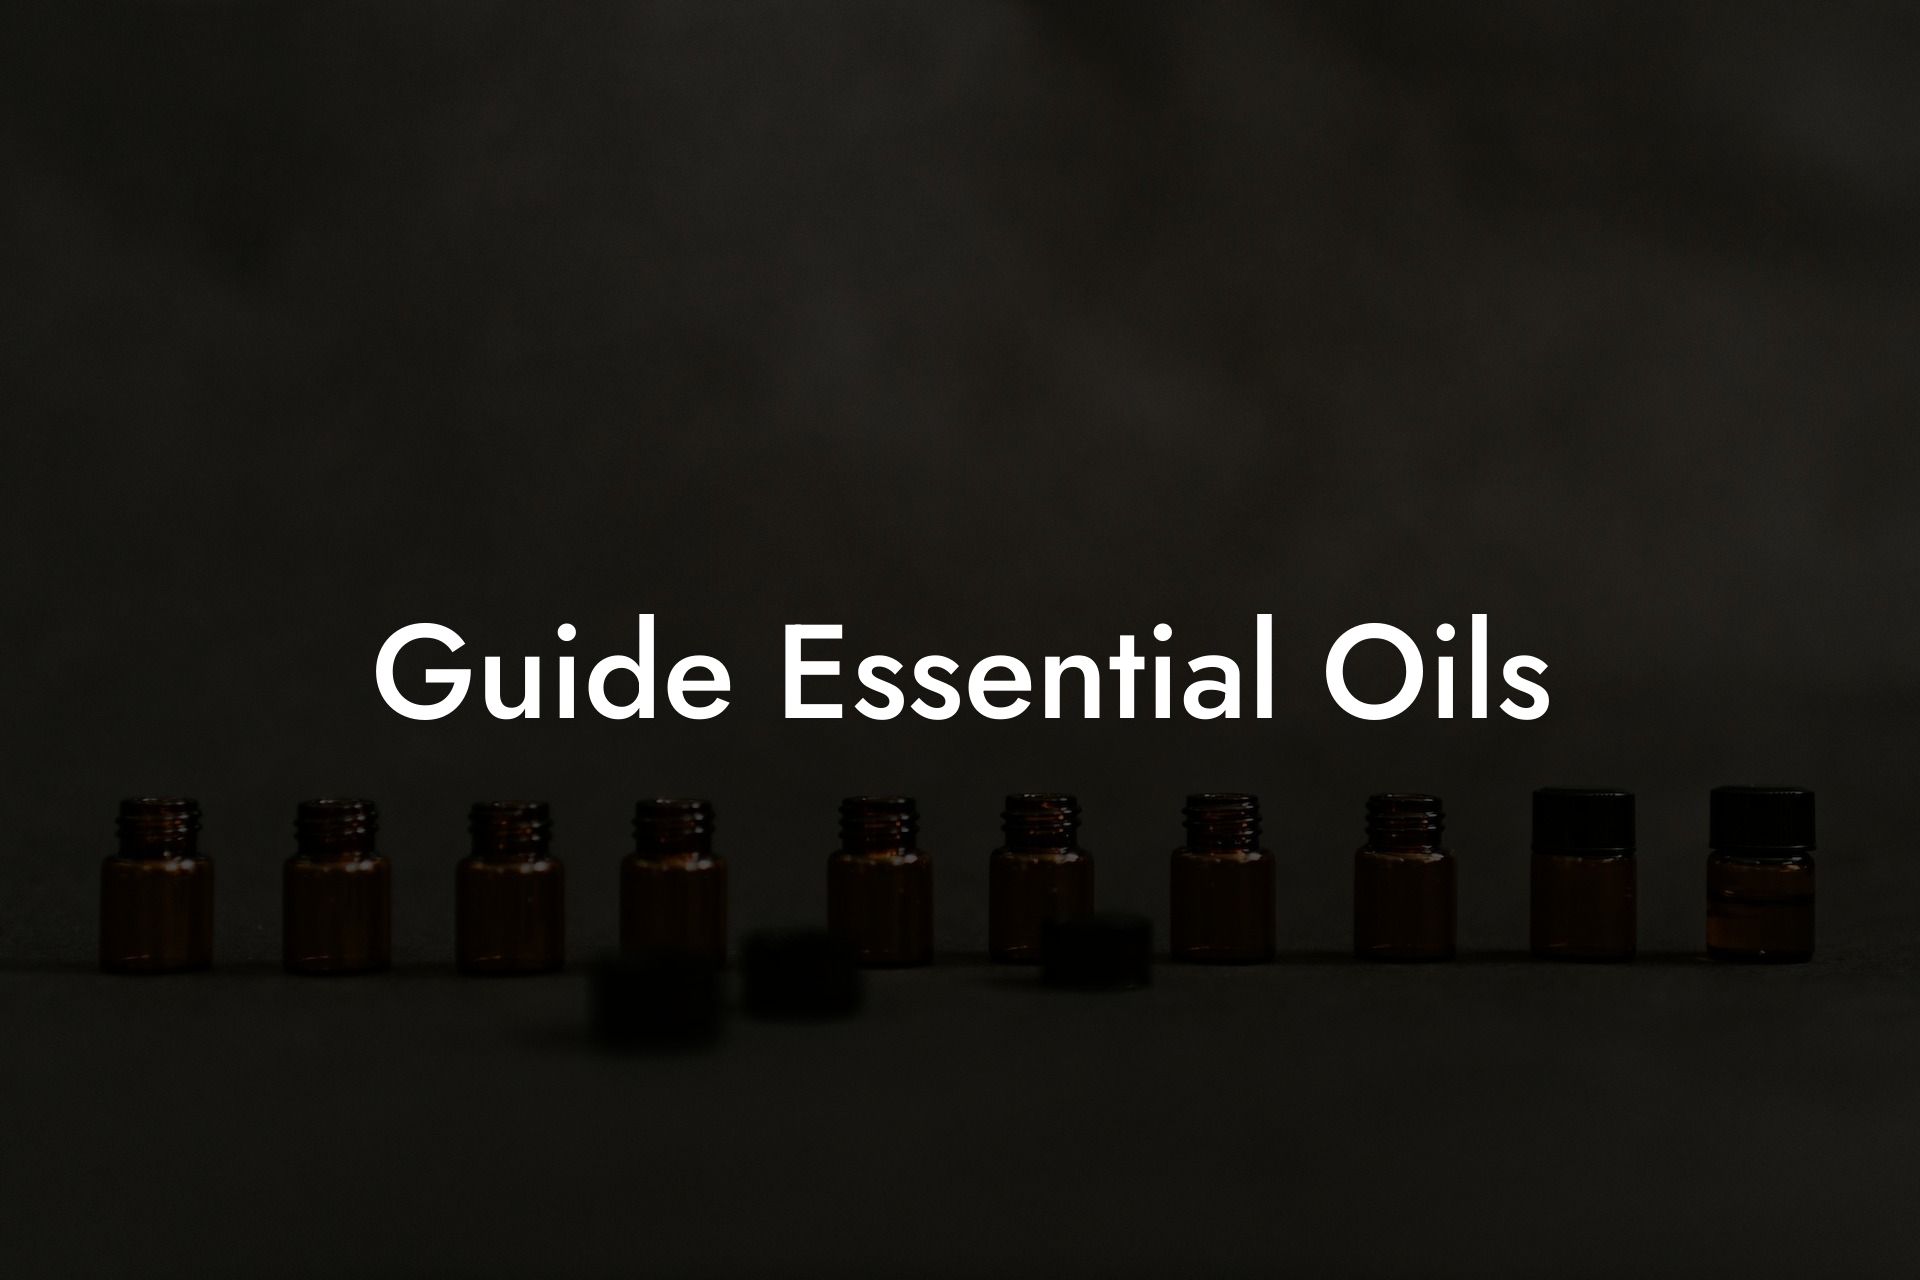 Guide Essential Oils